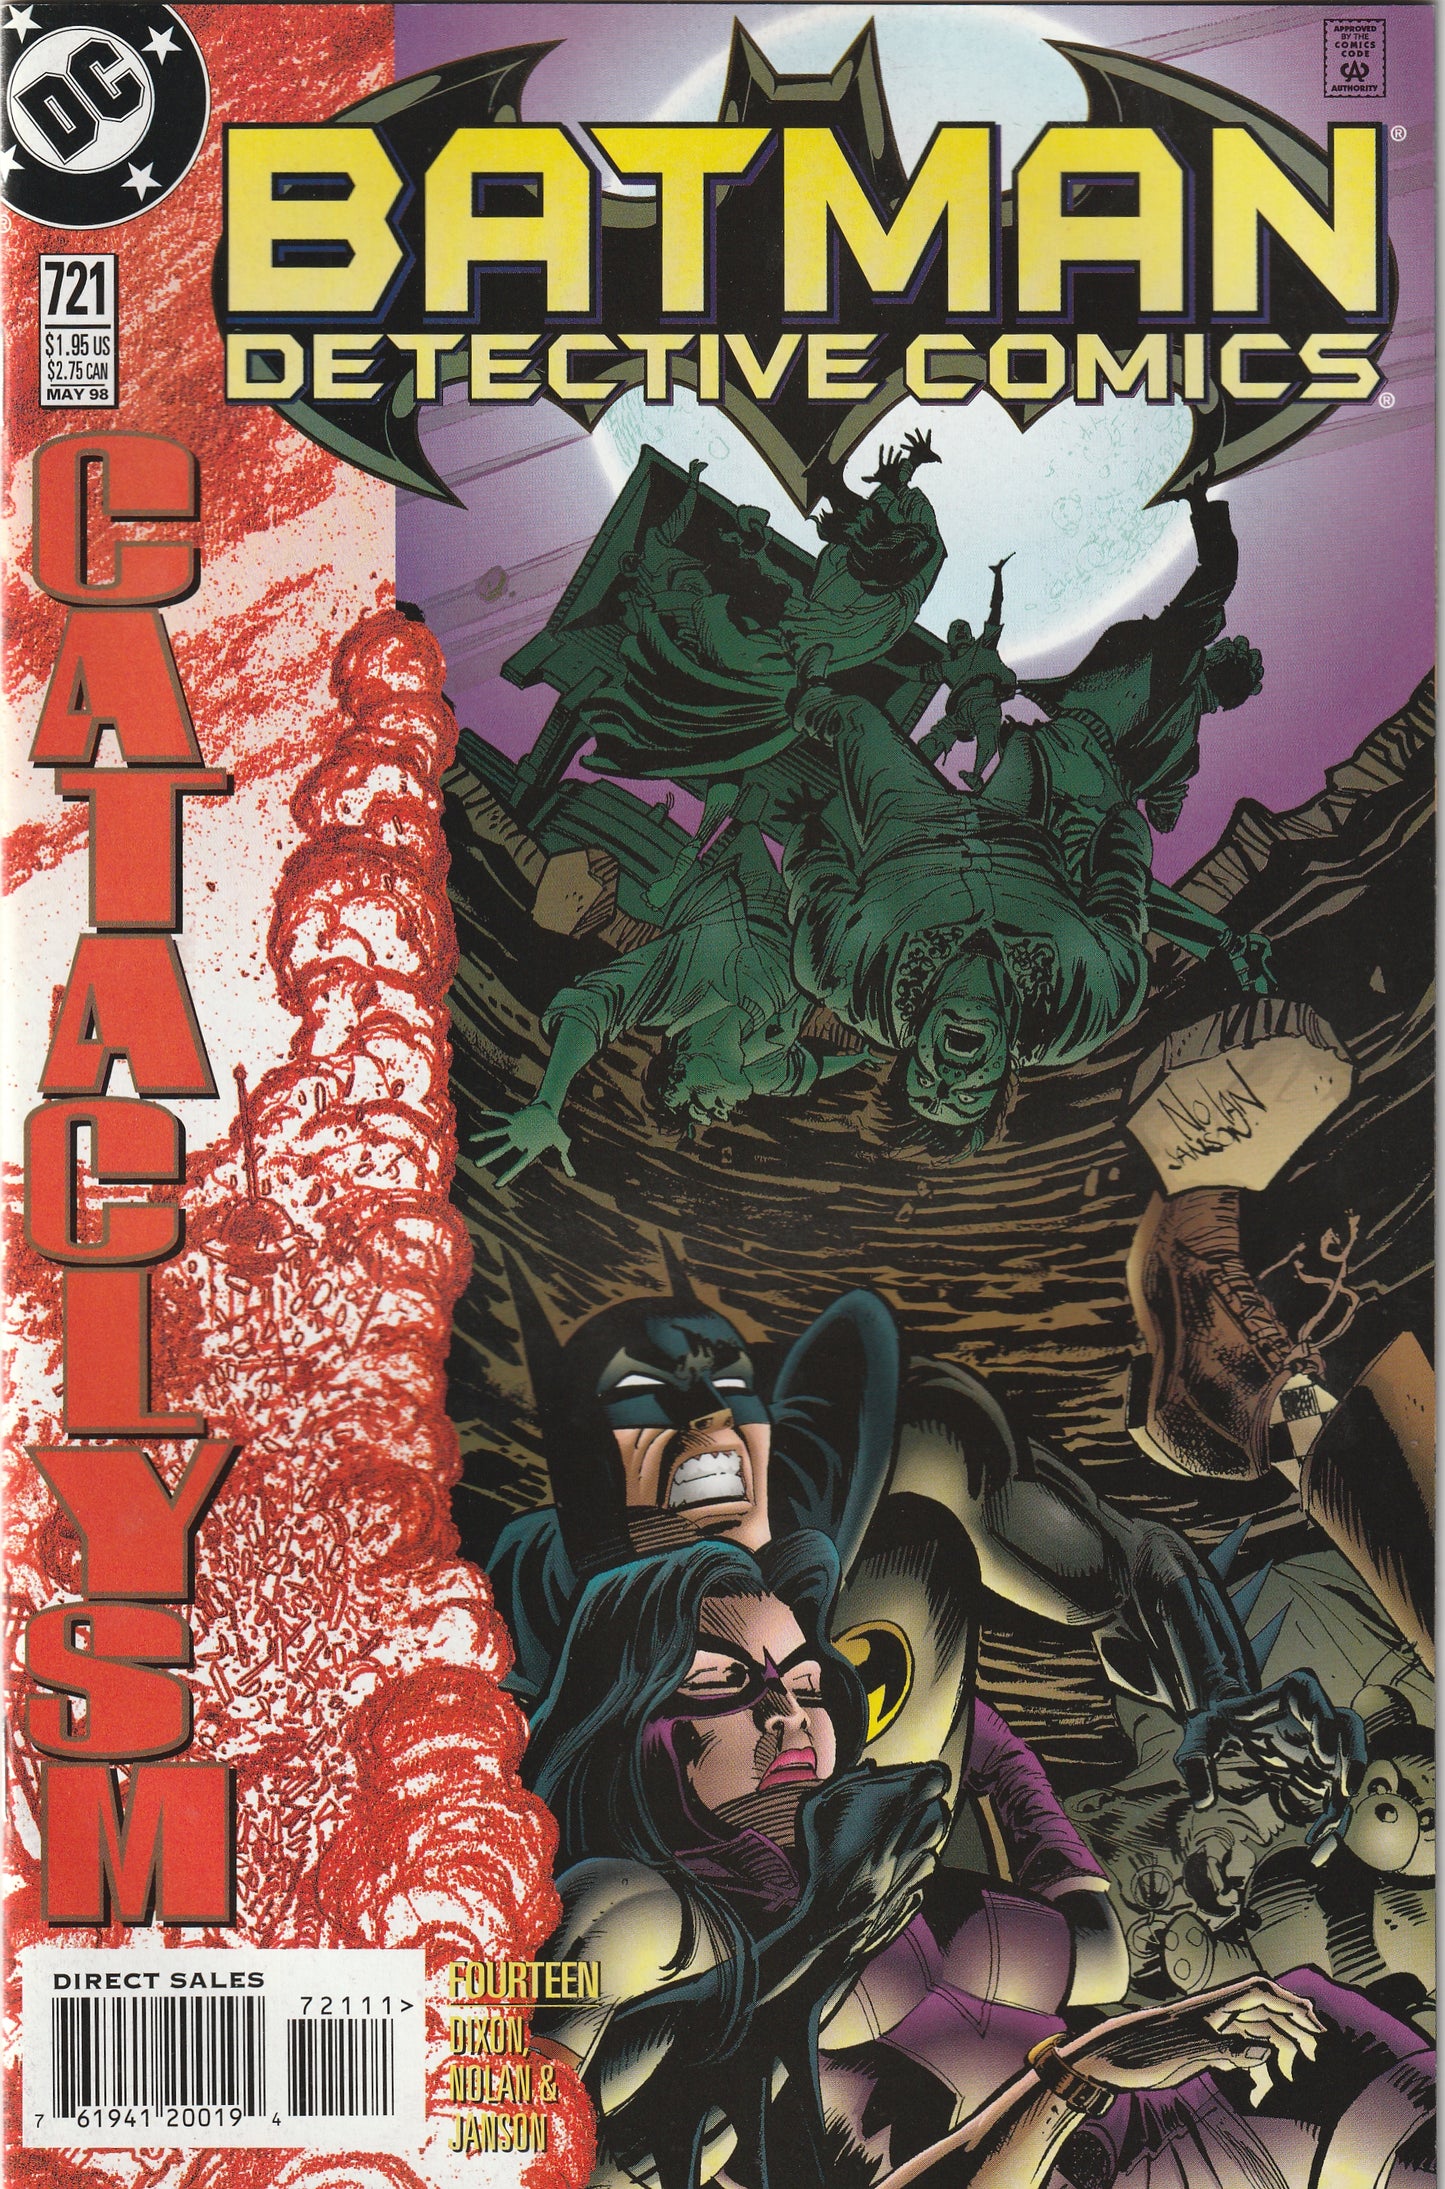 Detective Comics #721 (1998) - Cataclysm